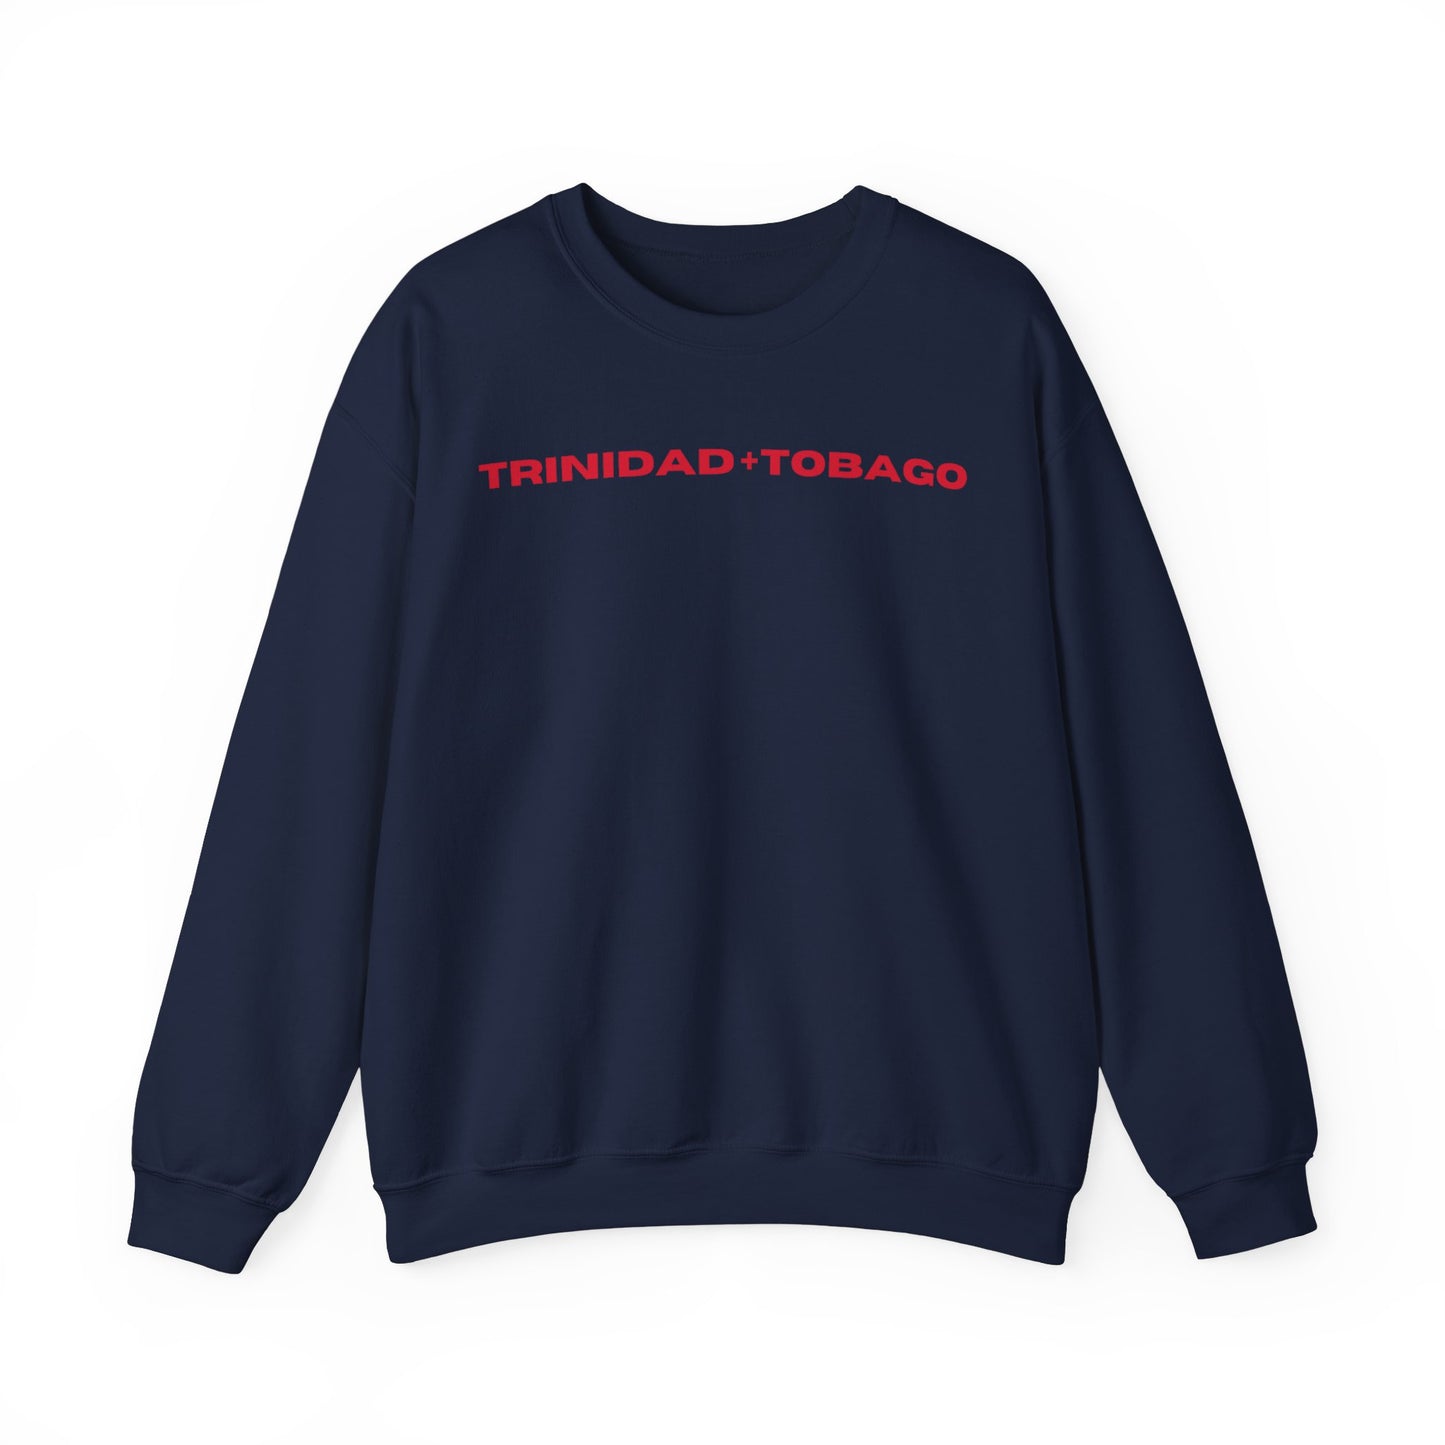 Trinidad + Tobago Crewneck Sweatshirt